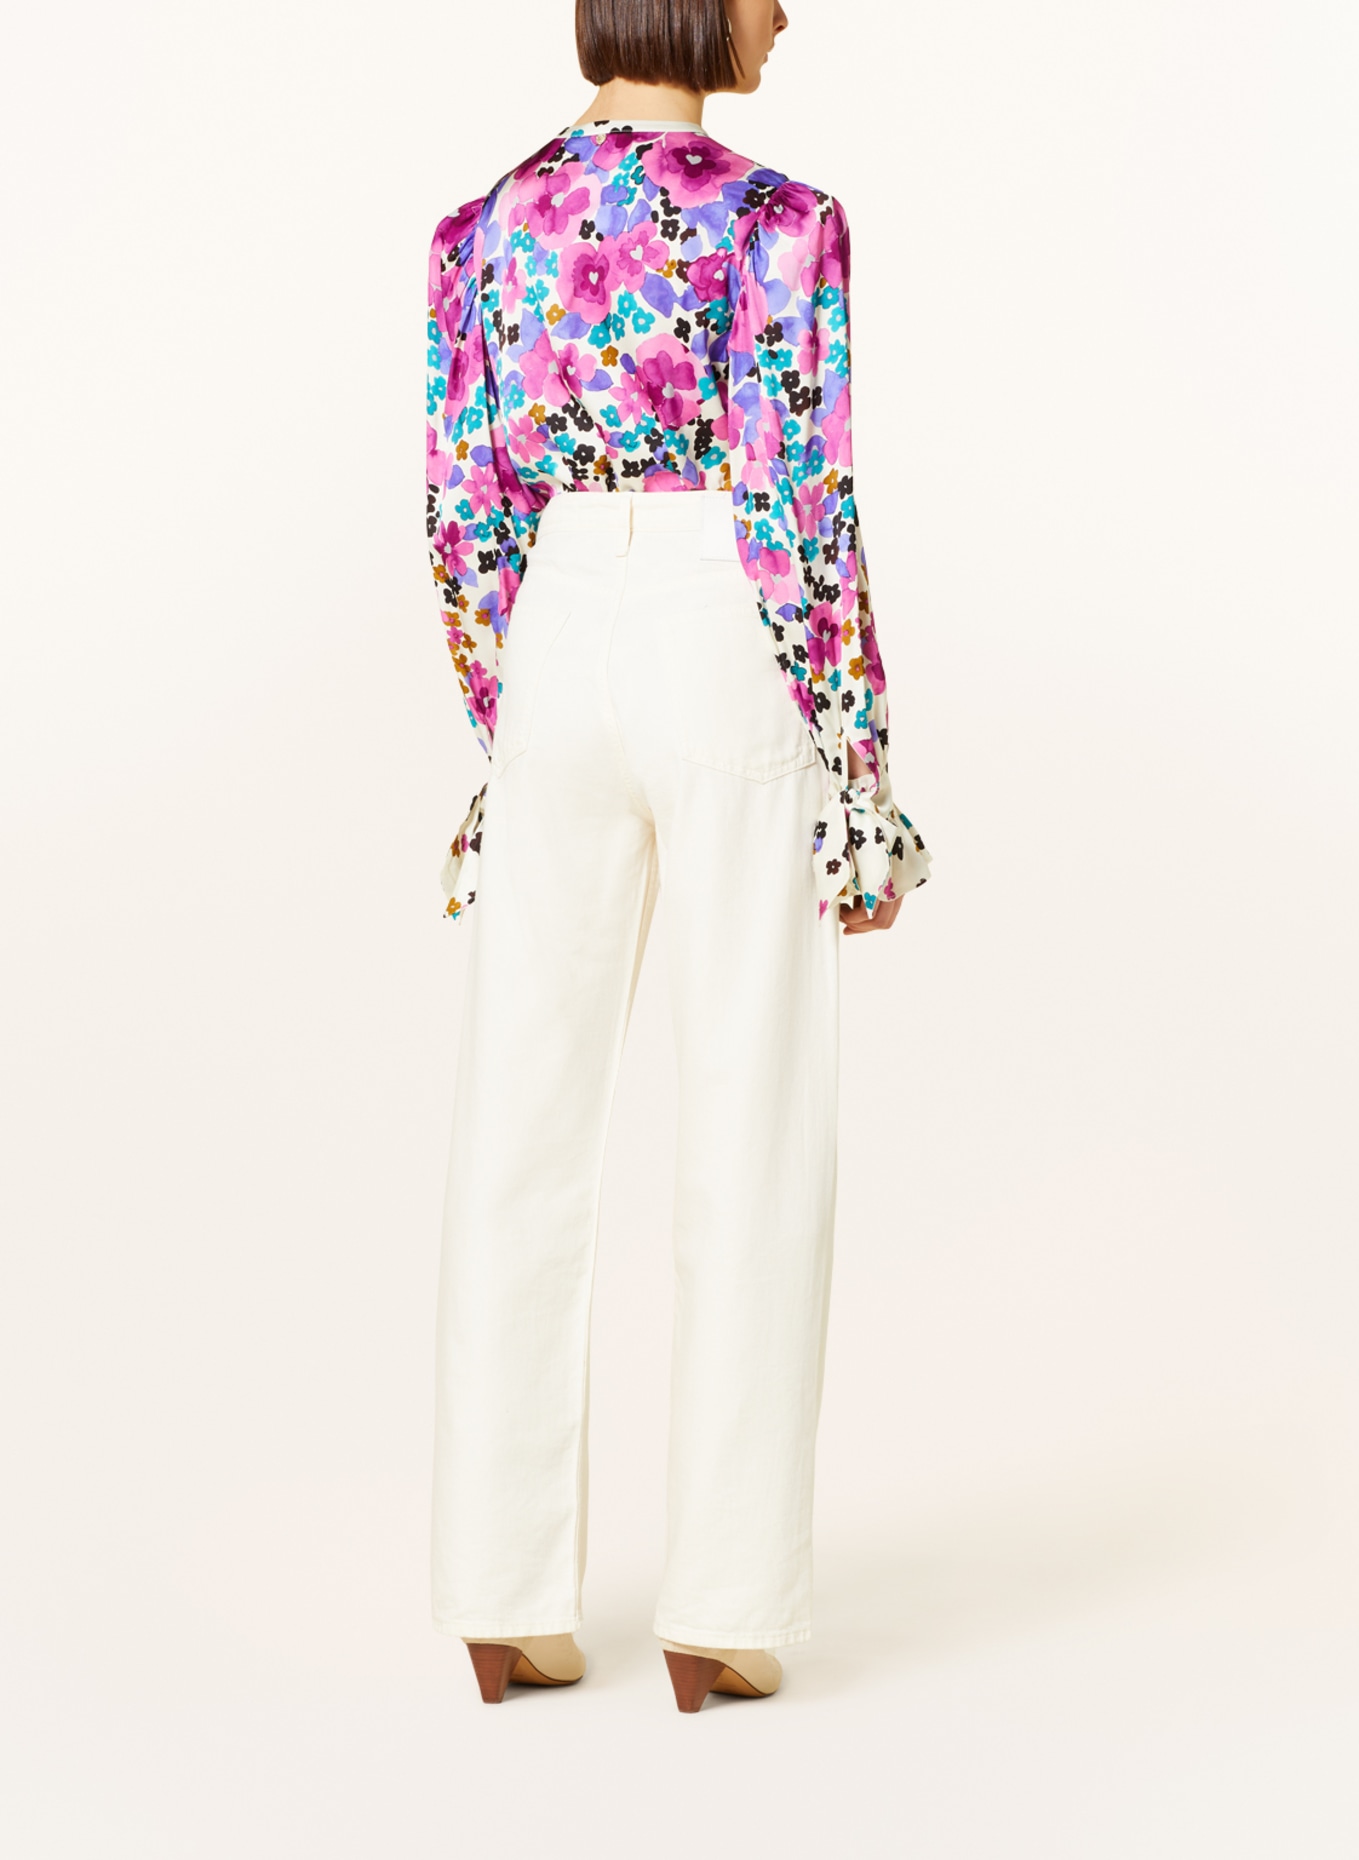 FABIENNE CHAPOT Satin blouse KYLIE, Color: ECRU/ FUCHSIA/ TEAL (Image 3)